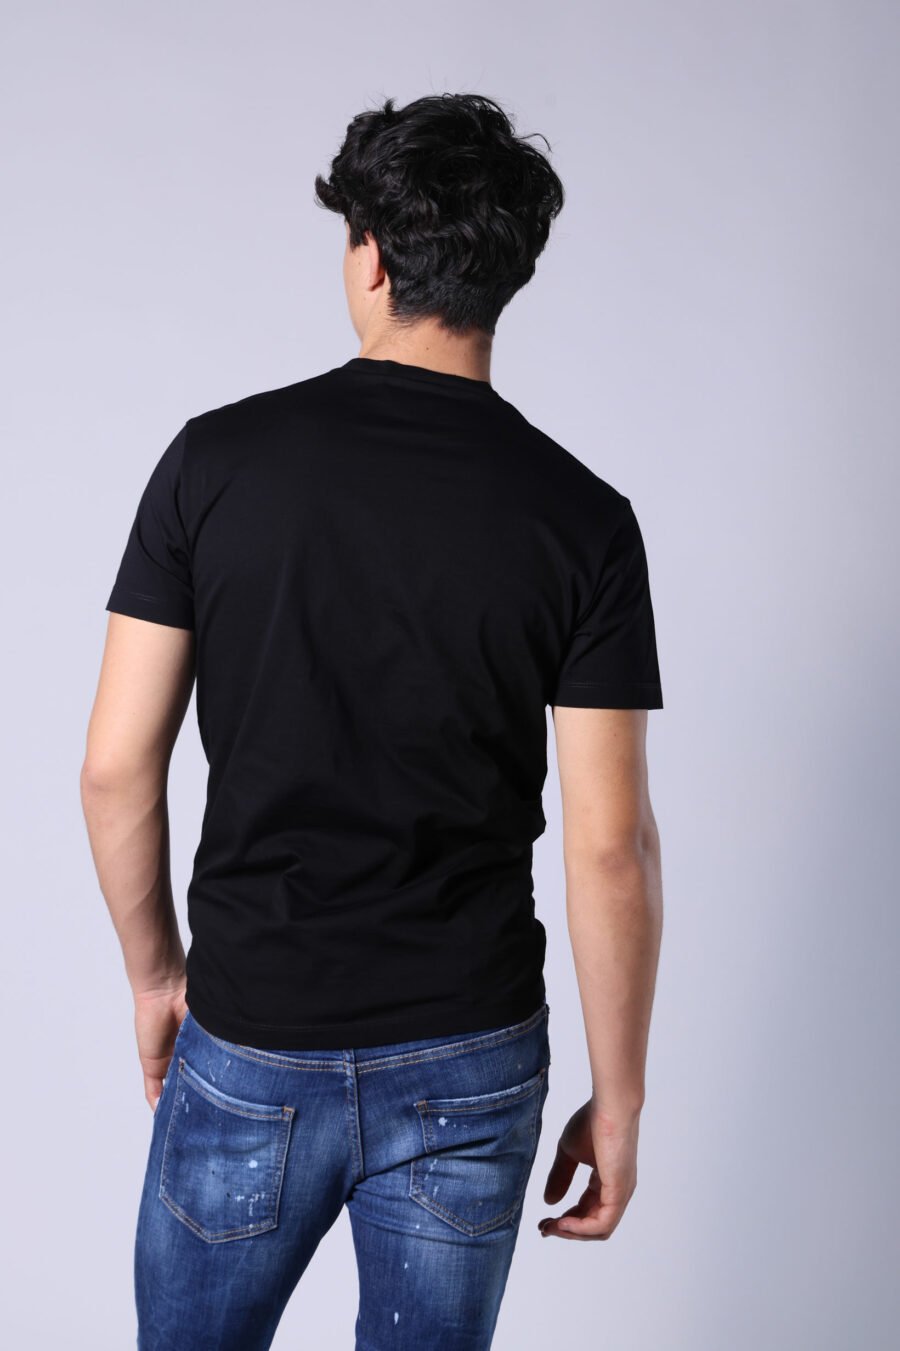 Schwarzes T-Shirt mit klassischem Logo in Weiß - Untitled Catalog 05263